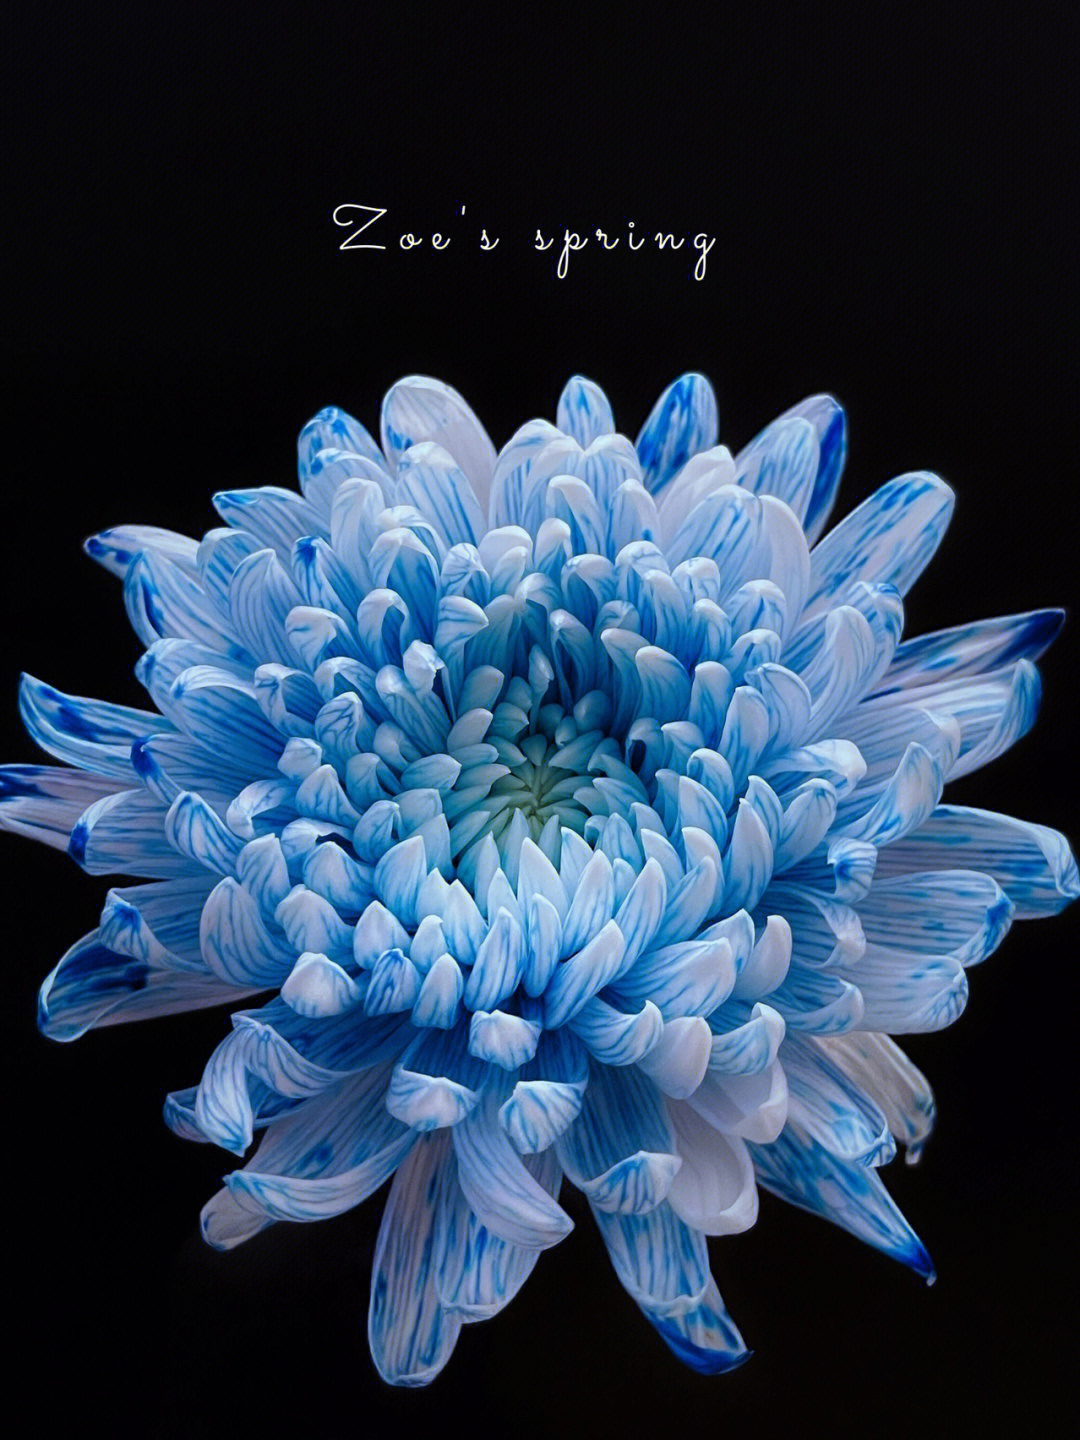 深蓝色的菊花图片